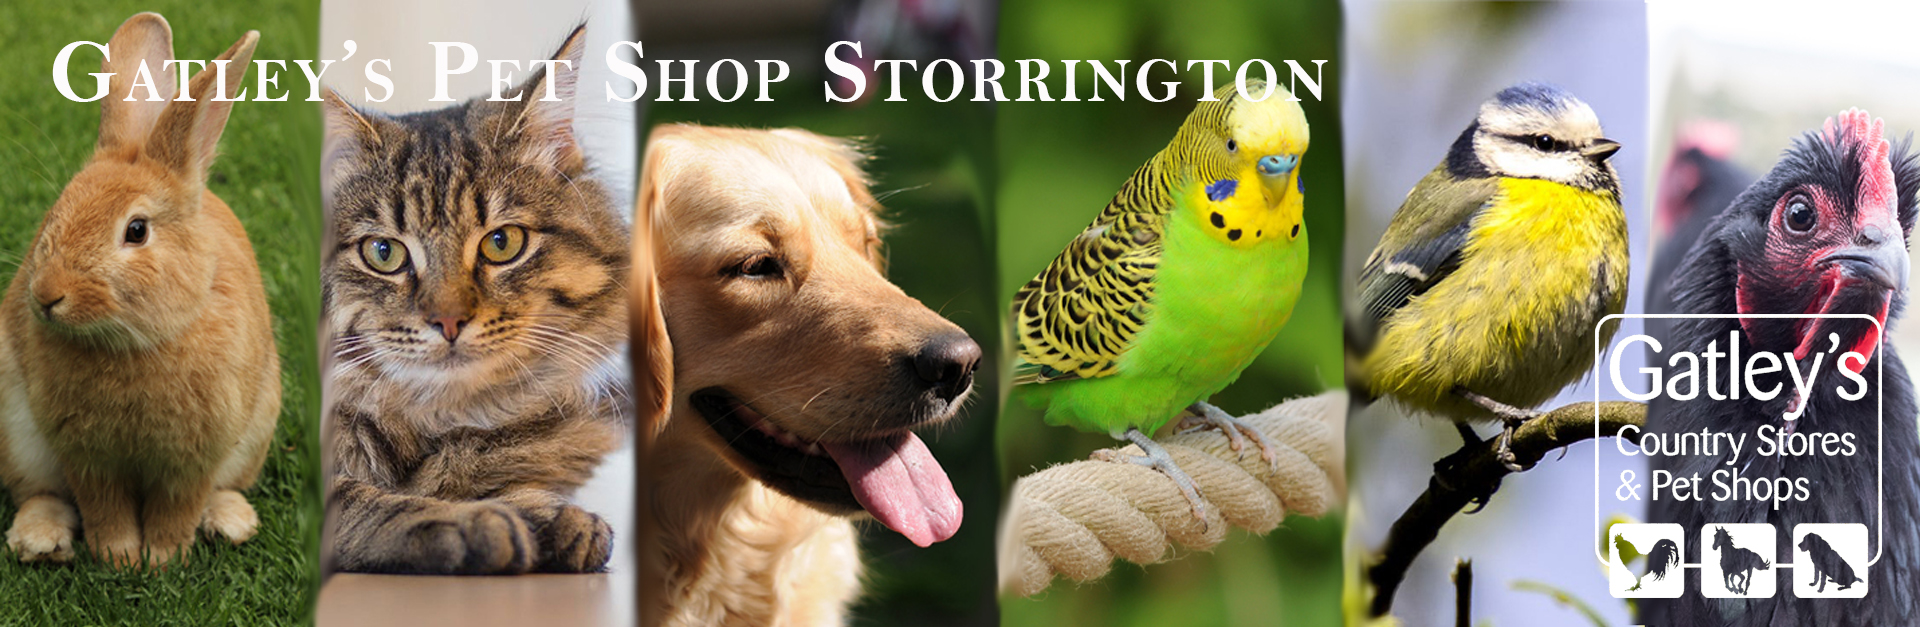 Gatleys pet shop storrington